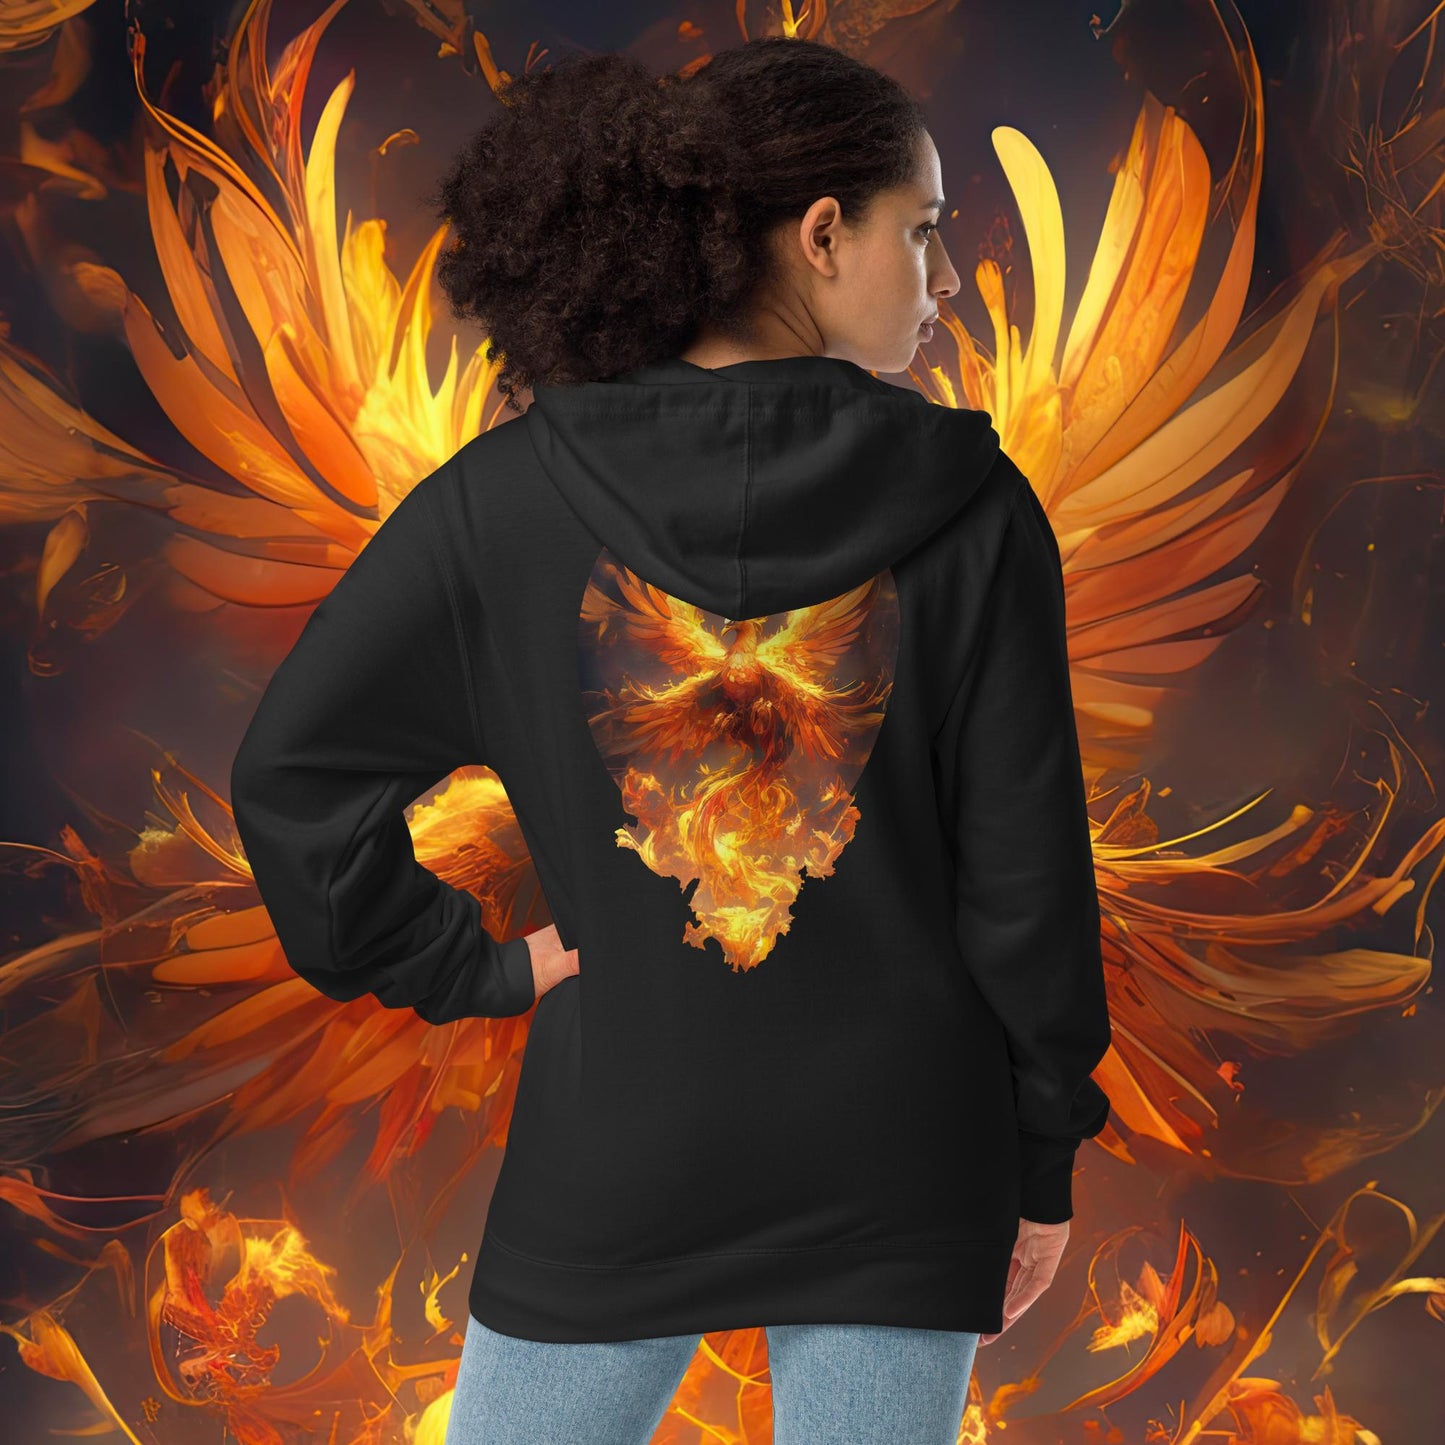 Born from Fire | Phoenix Unisex fleece zip up hoodie